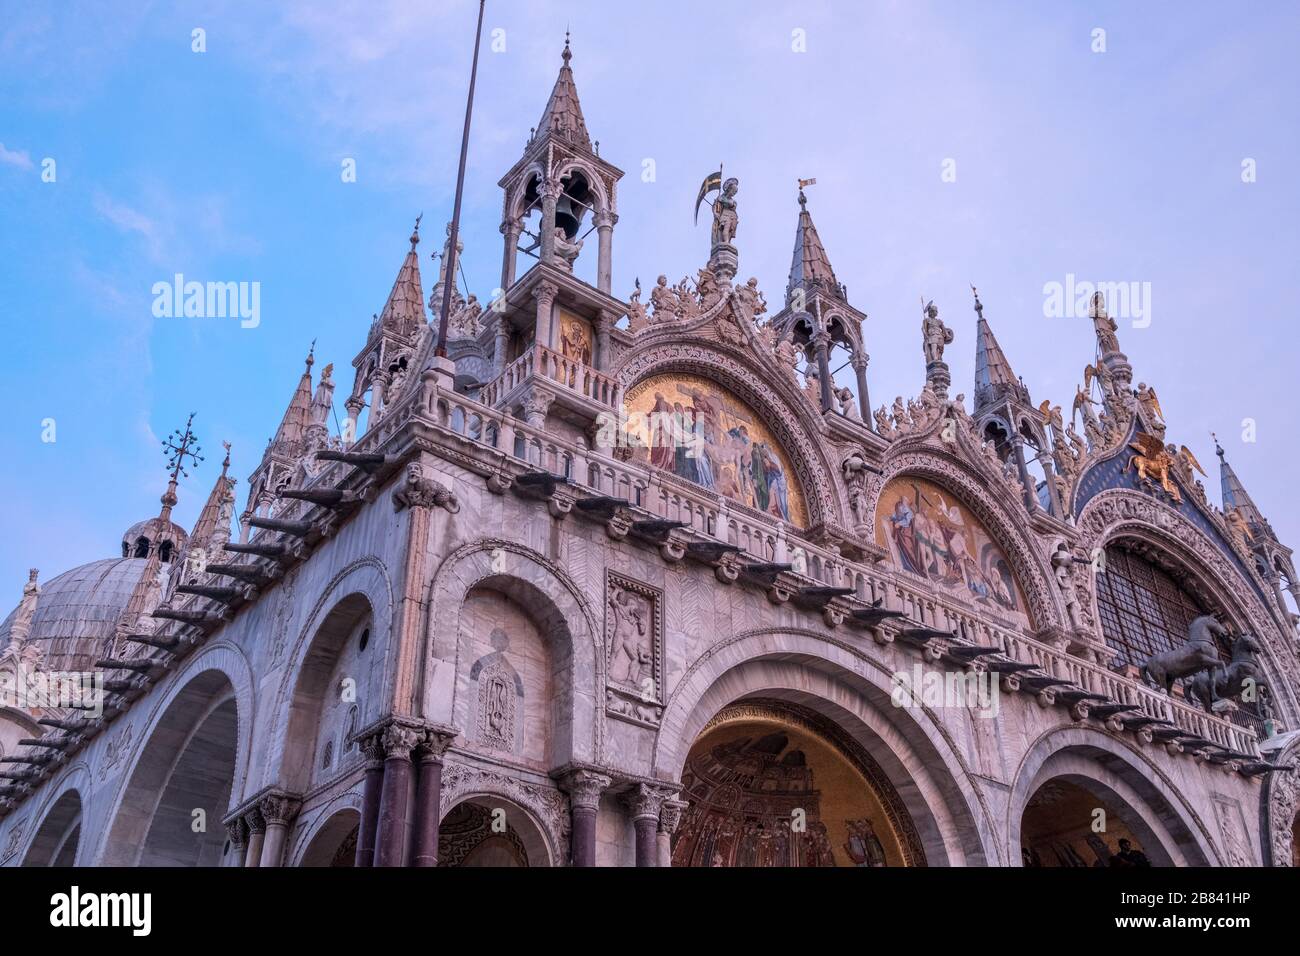 Vue jusqu'à l'angle nord-ouest de la ligne de toit ornementée de la basilique Saint-Marc, Venise. Le marbre brille de rose avec la lumière du soleil couchant. Banque D'Images